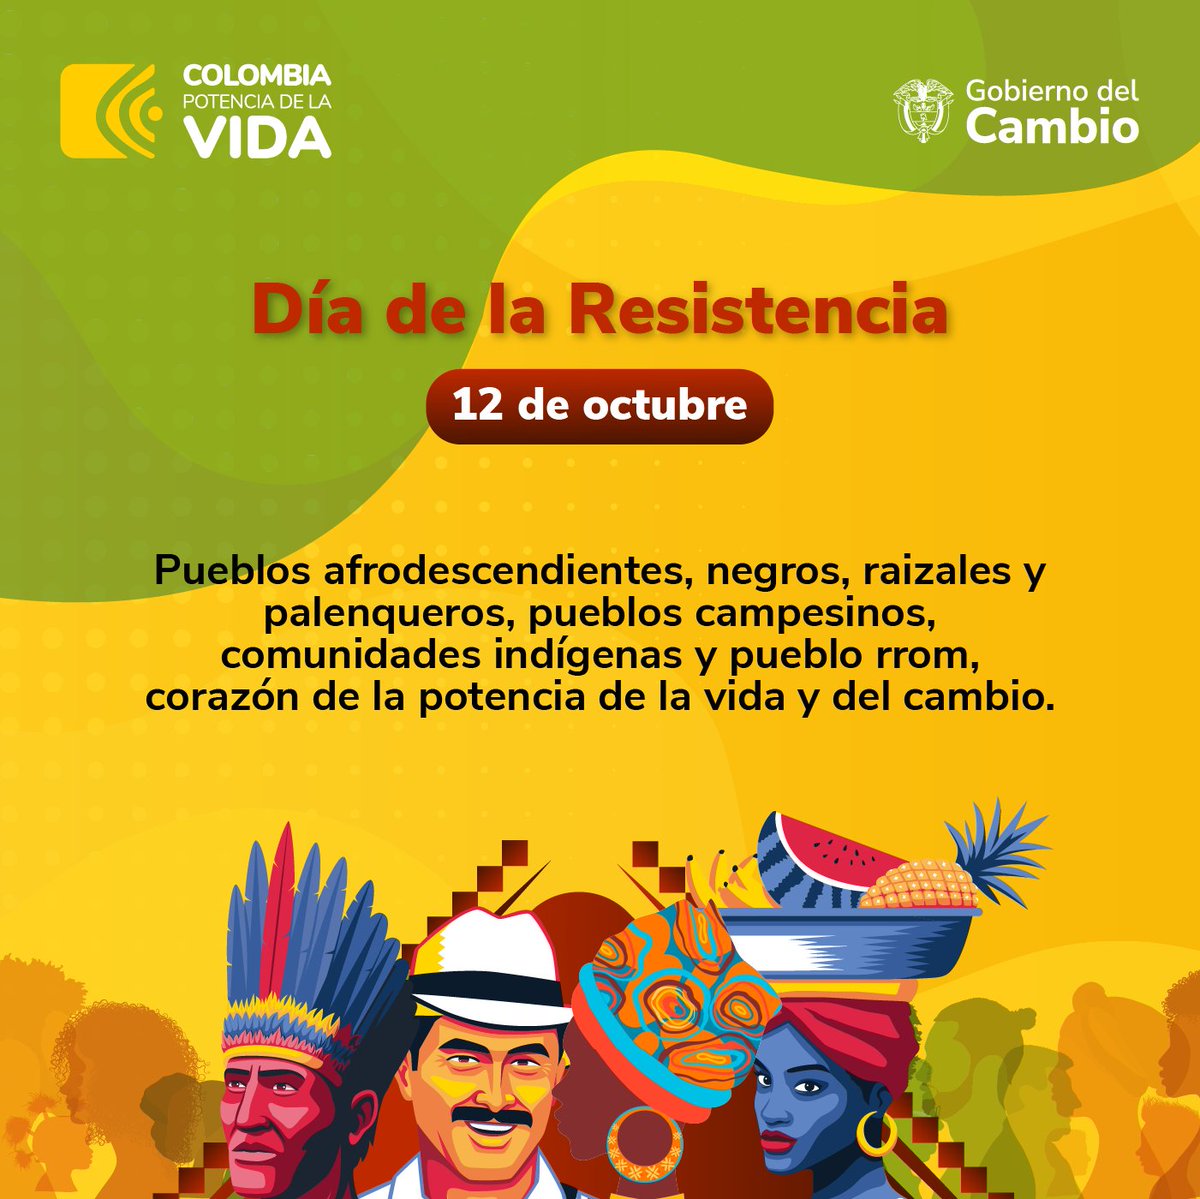 Hoy 12 de octubre, Día de la Diversidad étnica y Cultural, destacamos la resistencia de los pueblos que son el corazón de la Colombia, Potencia de la Vida y el Cambio. #CaminoALaReparaciónHistórica